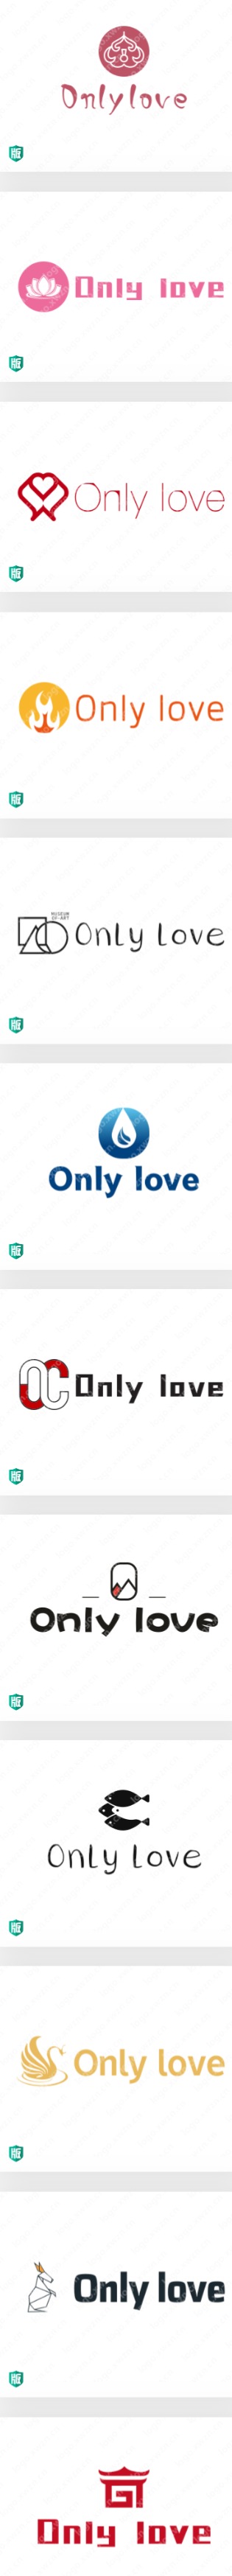 精选20个饰品英文名“Only love”logo设计